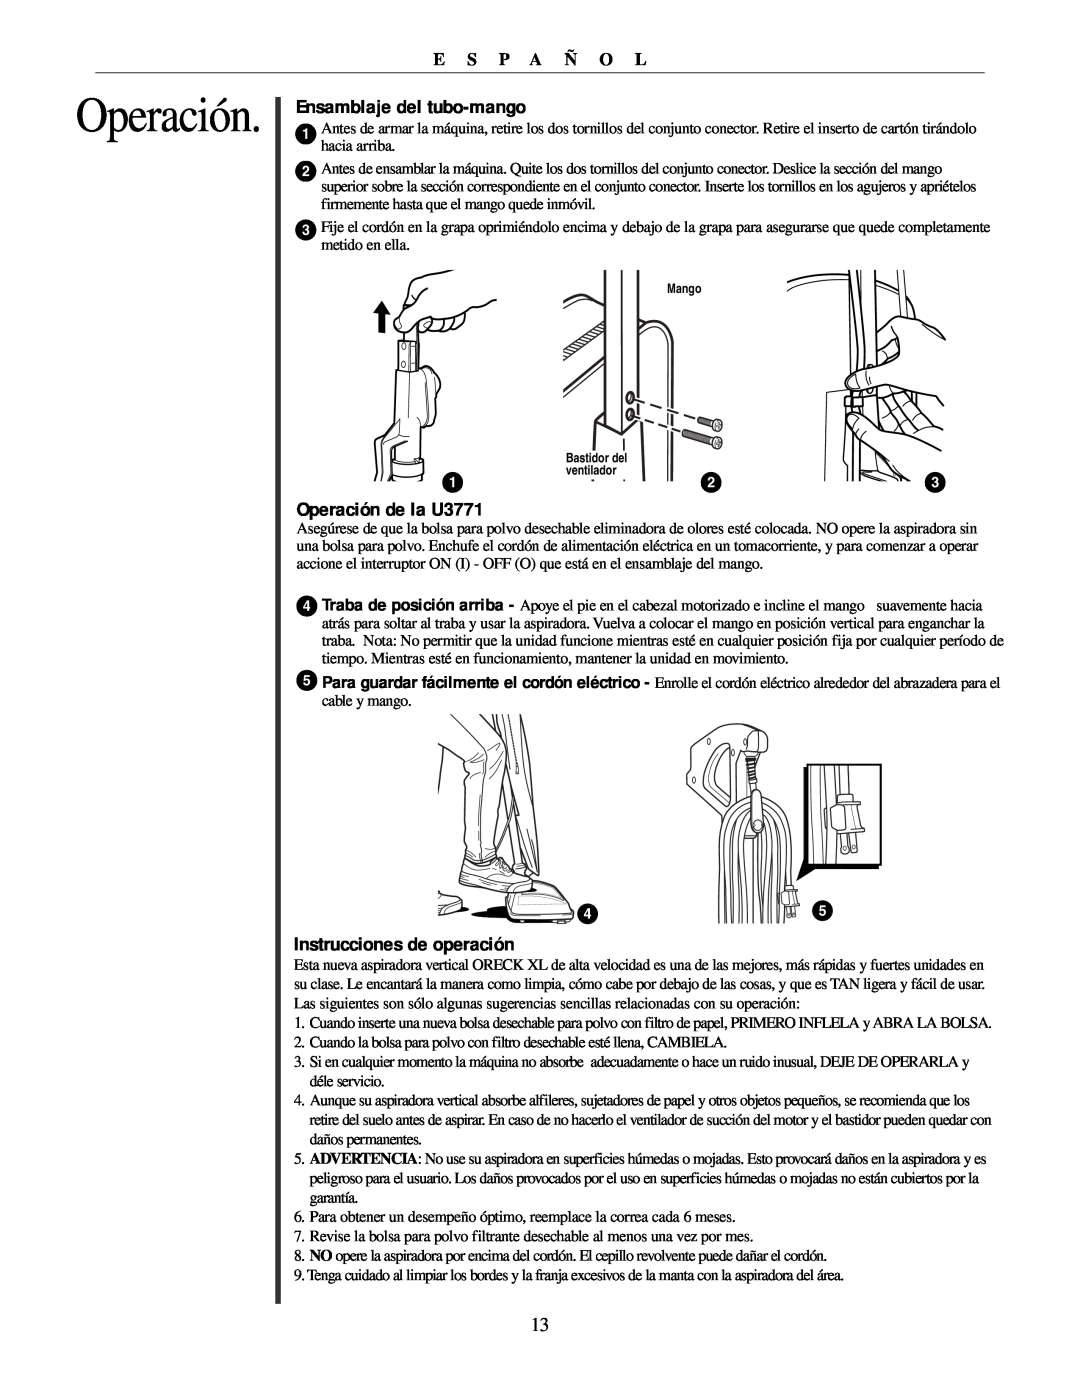 Oreck manual Ensamblaje del tubo-mango, Operación de la U3771, Instrucciones de operación, E S P A Ñ O L 